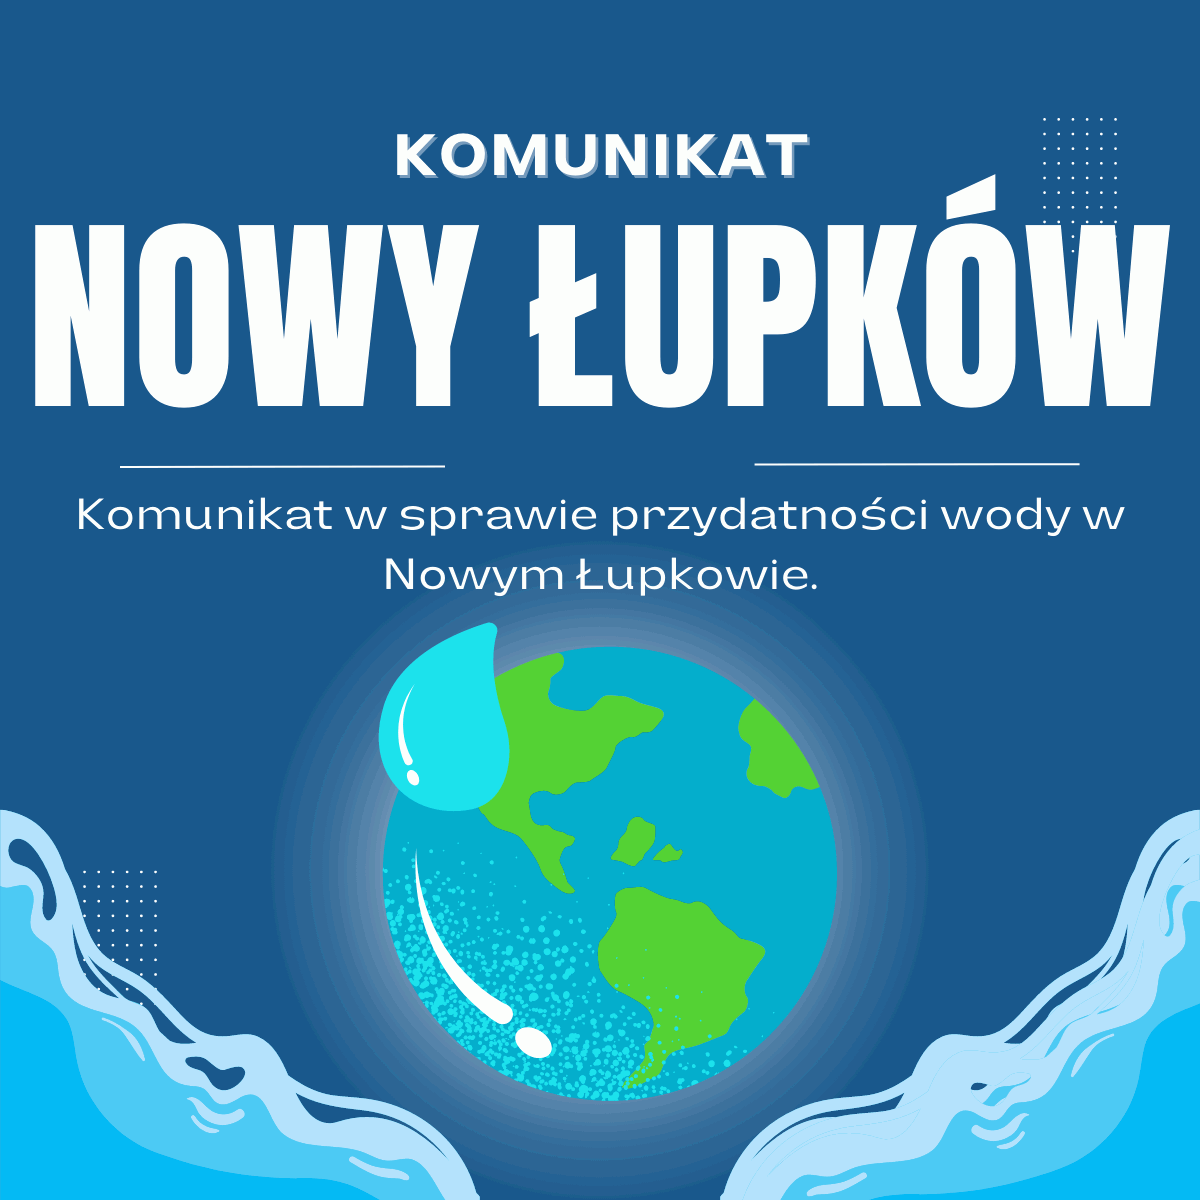 Komunikat w sprawie przydatności wody w Nowym Łupkowie.